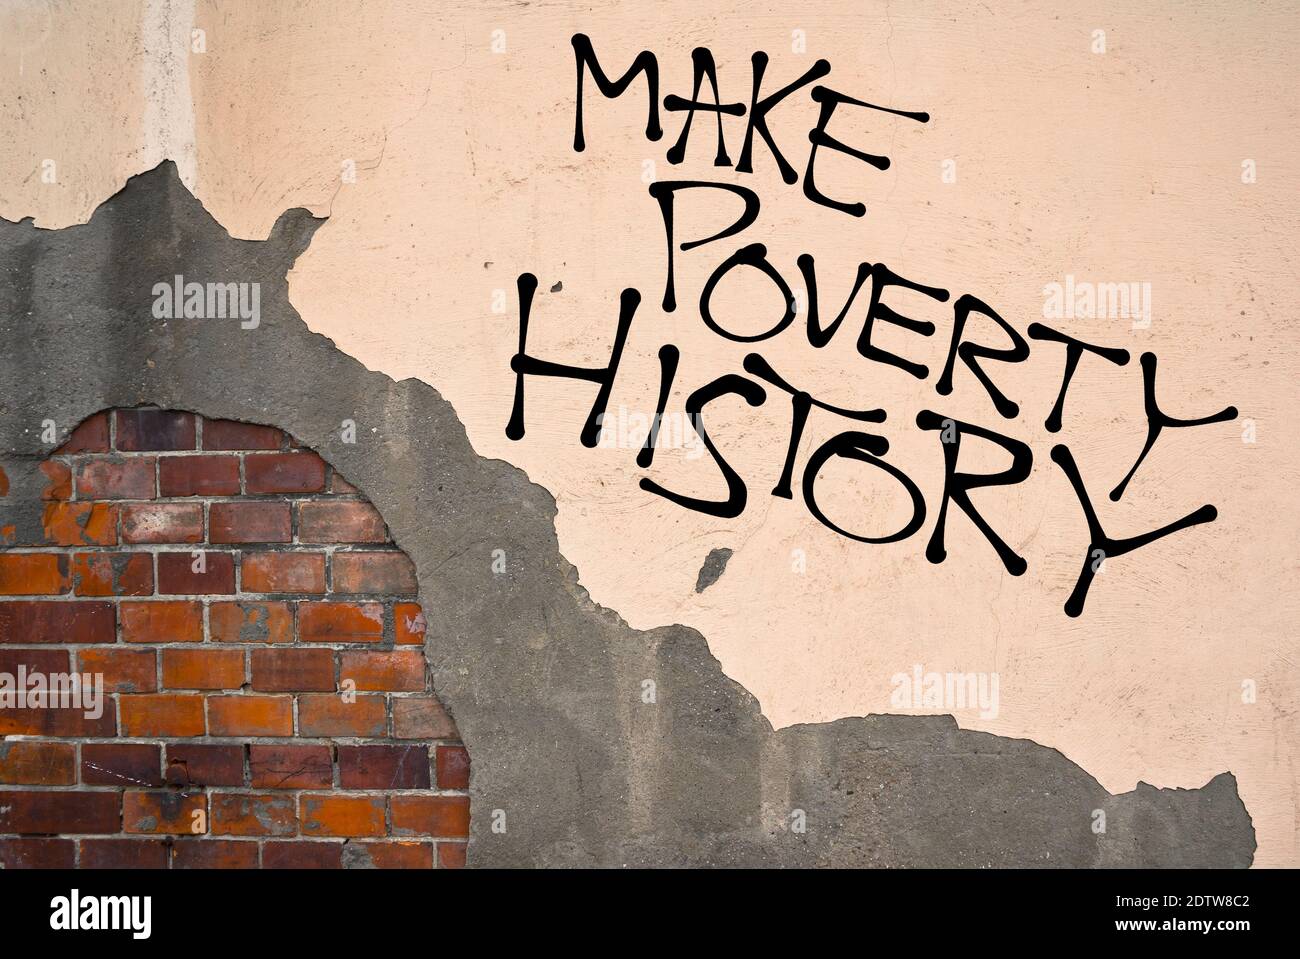 Graffiti manuscrito hacer la pobreza Historia rociada en la pared, estética anarquista. Llamamiento para resolver la situación de pobreza, economía y sufrimiento en po Foto de stock